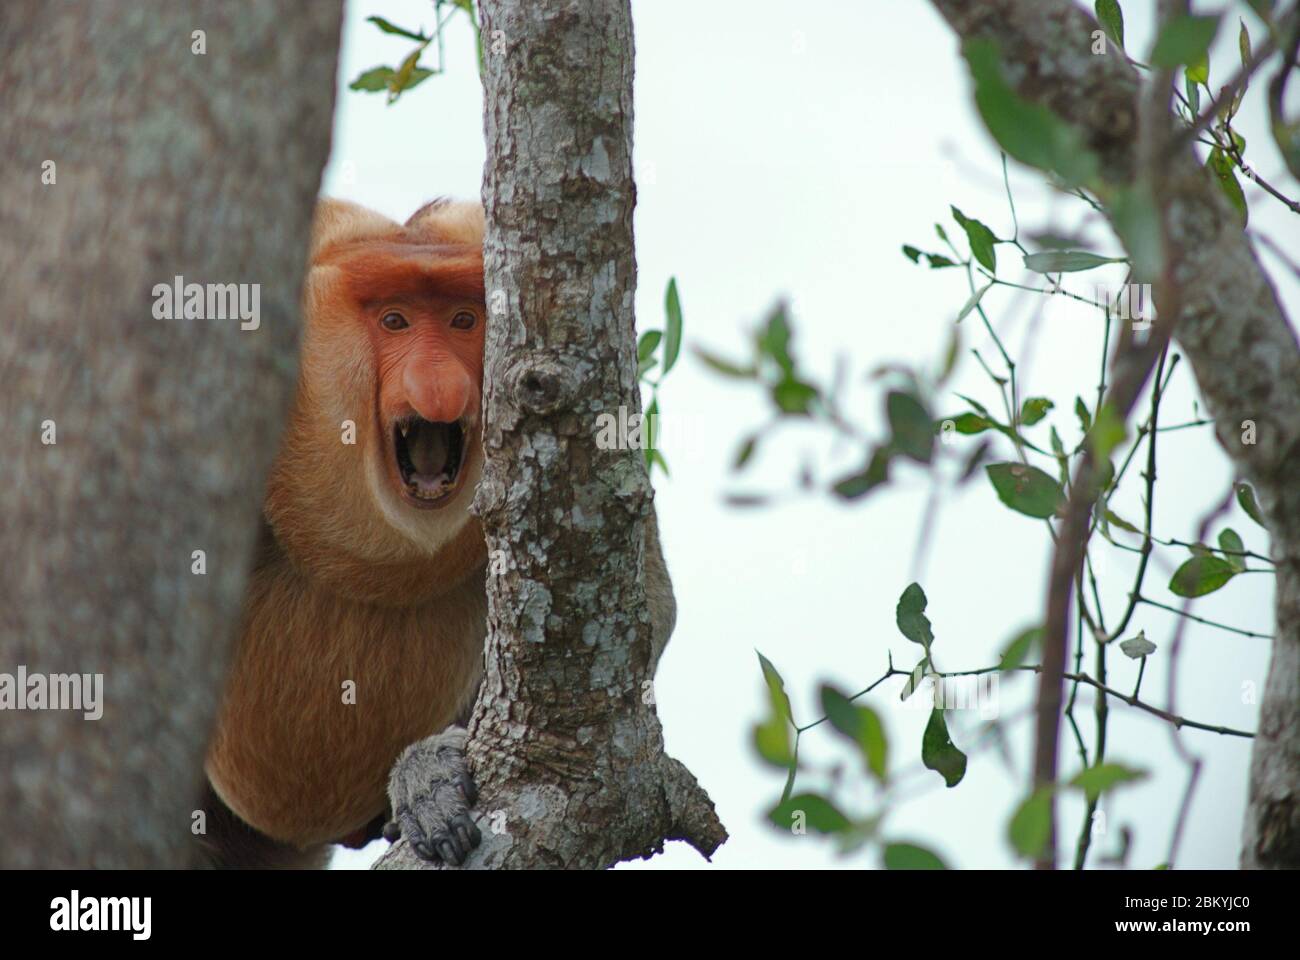 Un mâle alpha de singe proboscis (Nasalis larvatus) montrant un geste d'avertissement alors qu'il remarque la présence humaine dans une forêt de plaines riveraine dans la province de Kalimantan est, Indonésie. Image d'archivage. Banque D'Images